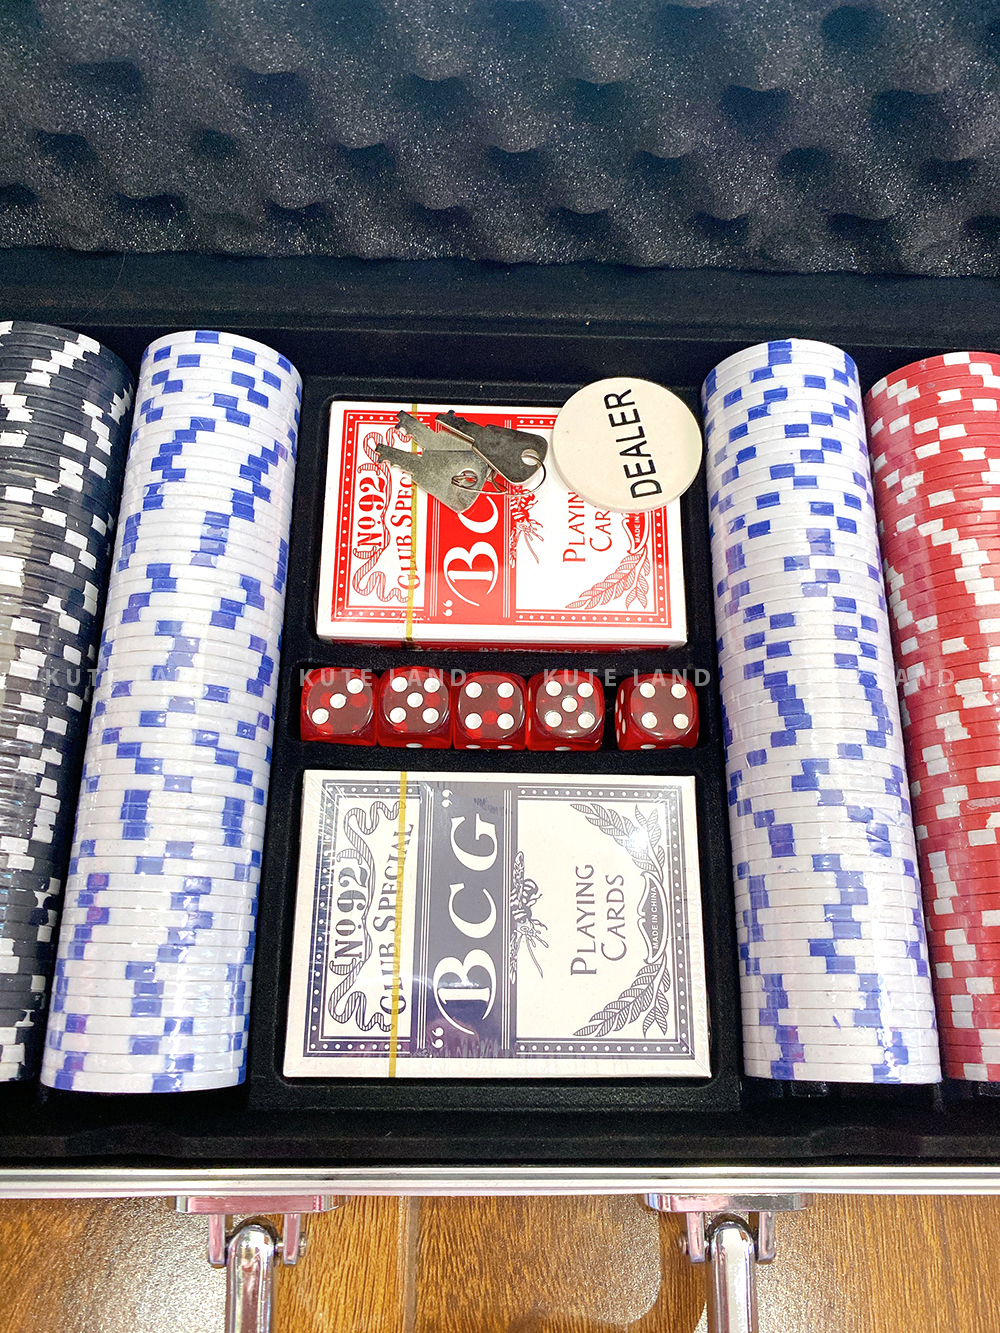 Vali Phỉnh Chip Poker Cao Cấp Hộp Nhôm 500 Chip Không Số Loại Tiêu Chuẩn Las Vegas